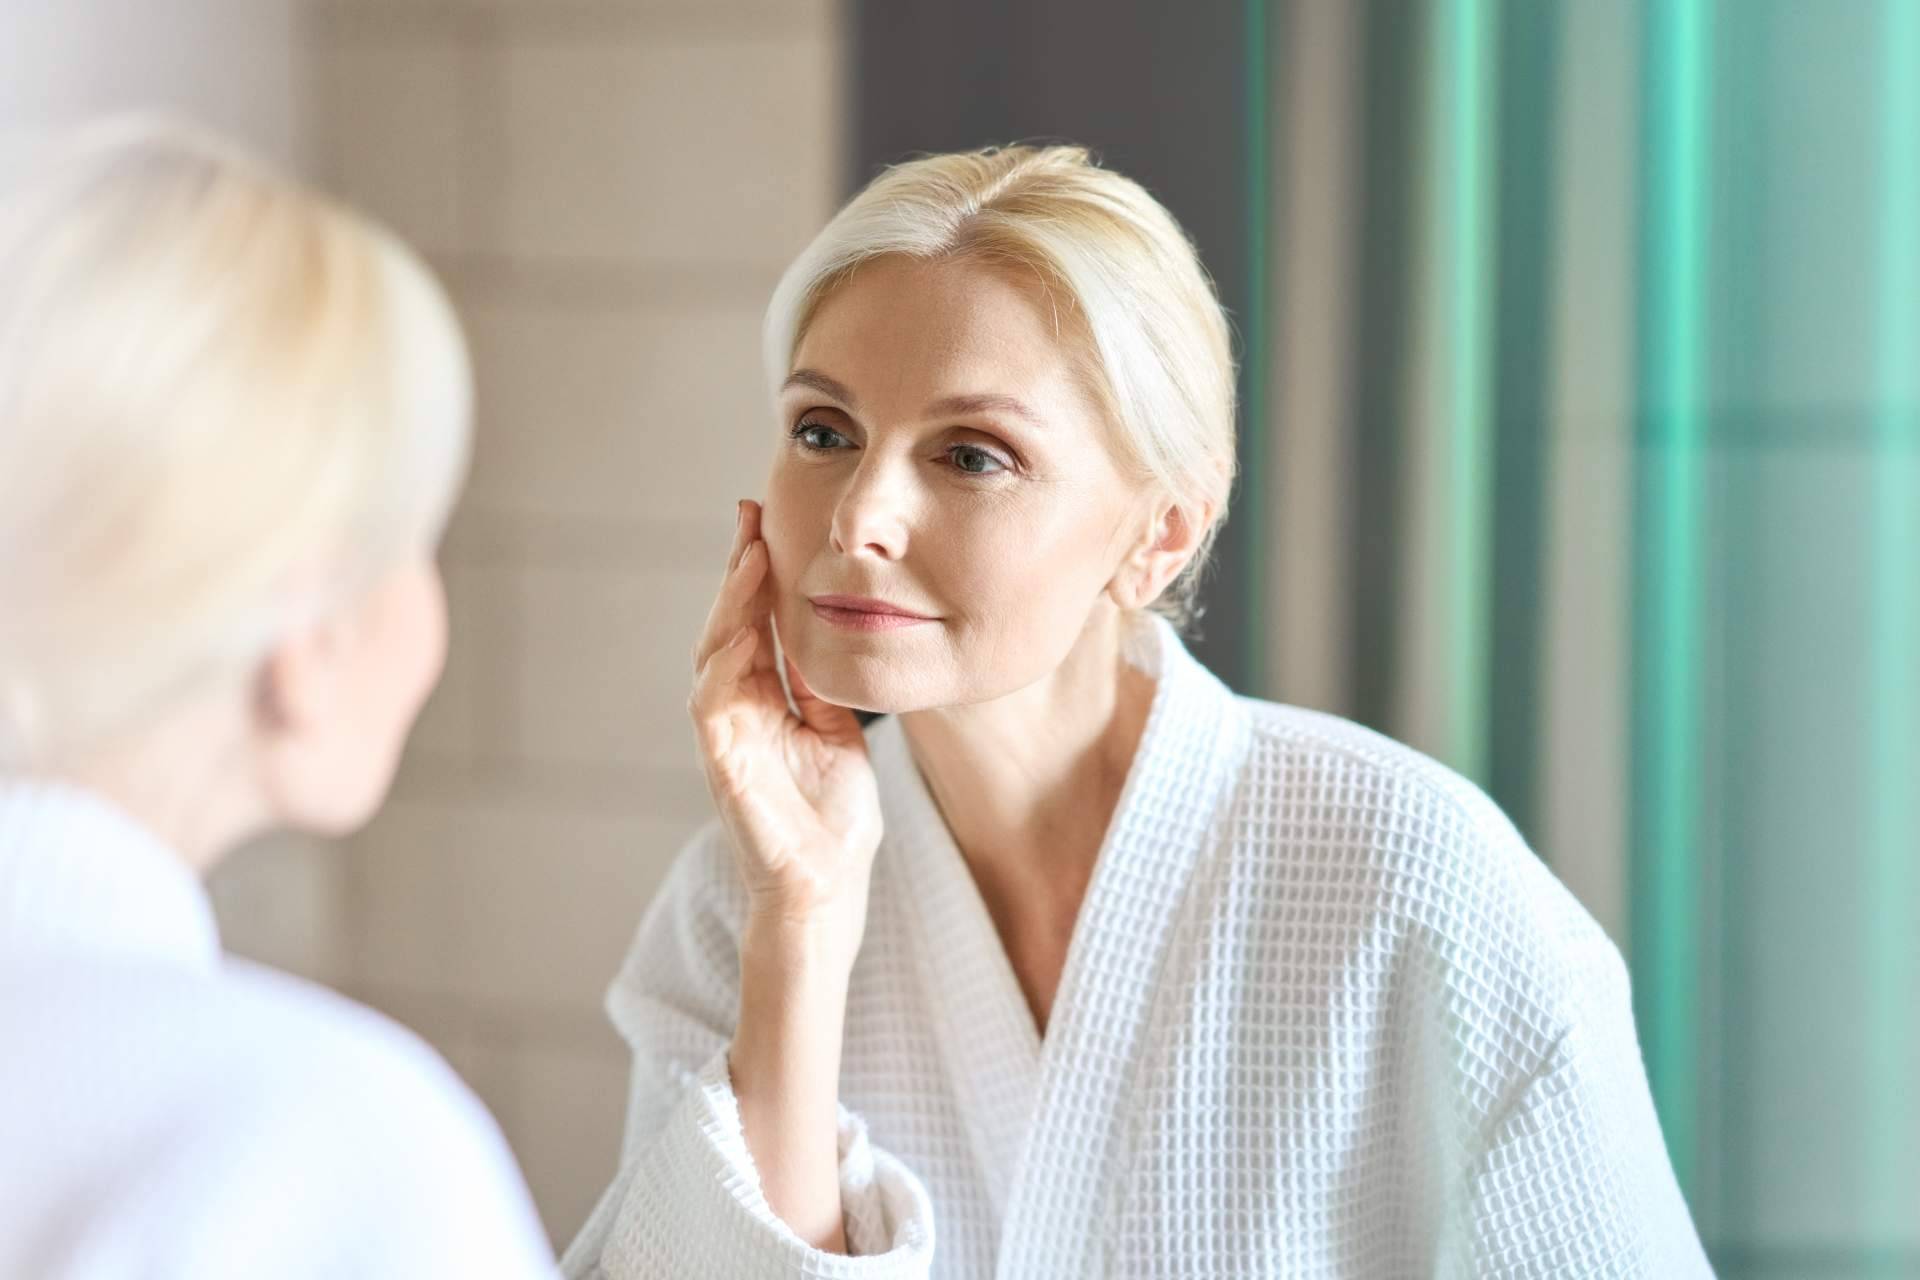 Crina Rus Beauty Center explica en qué consiste y cuáles son las bondades de la yesoterapia facial